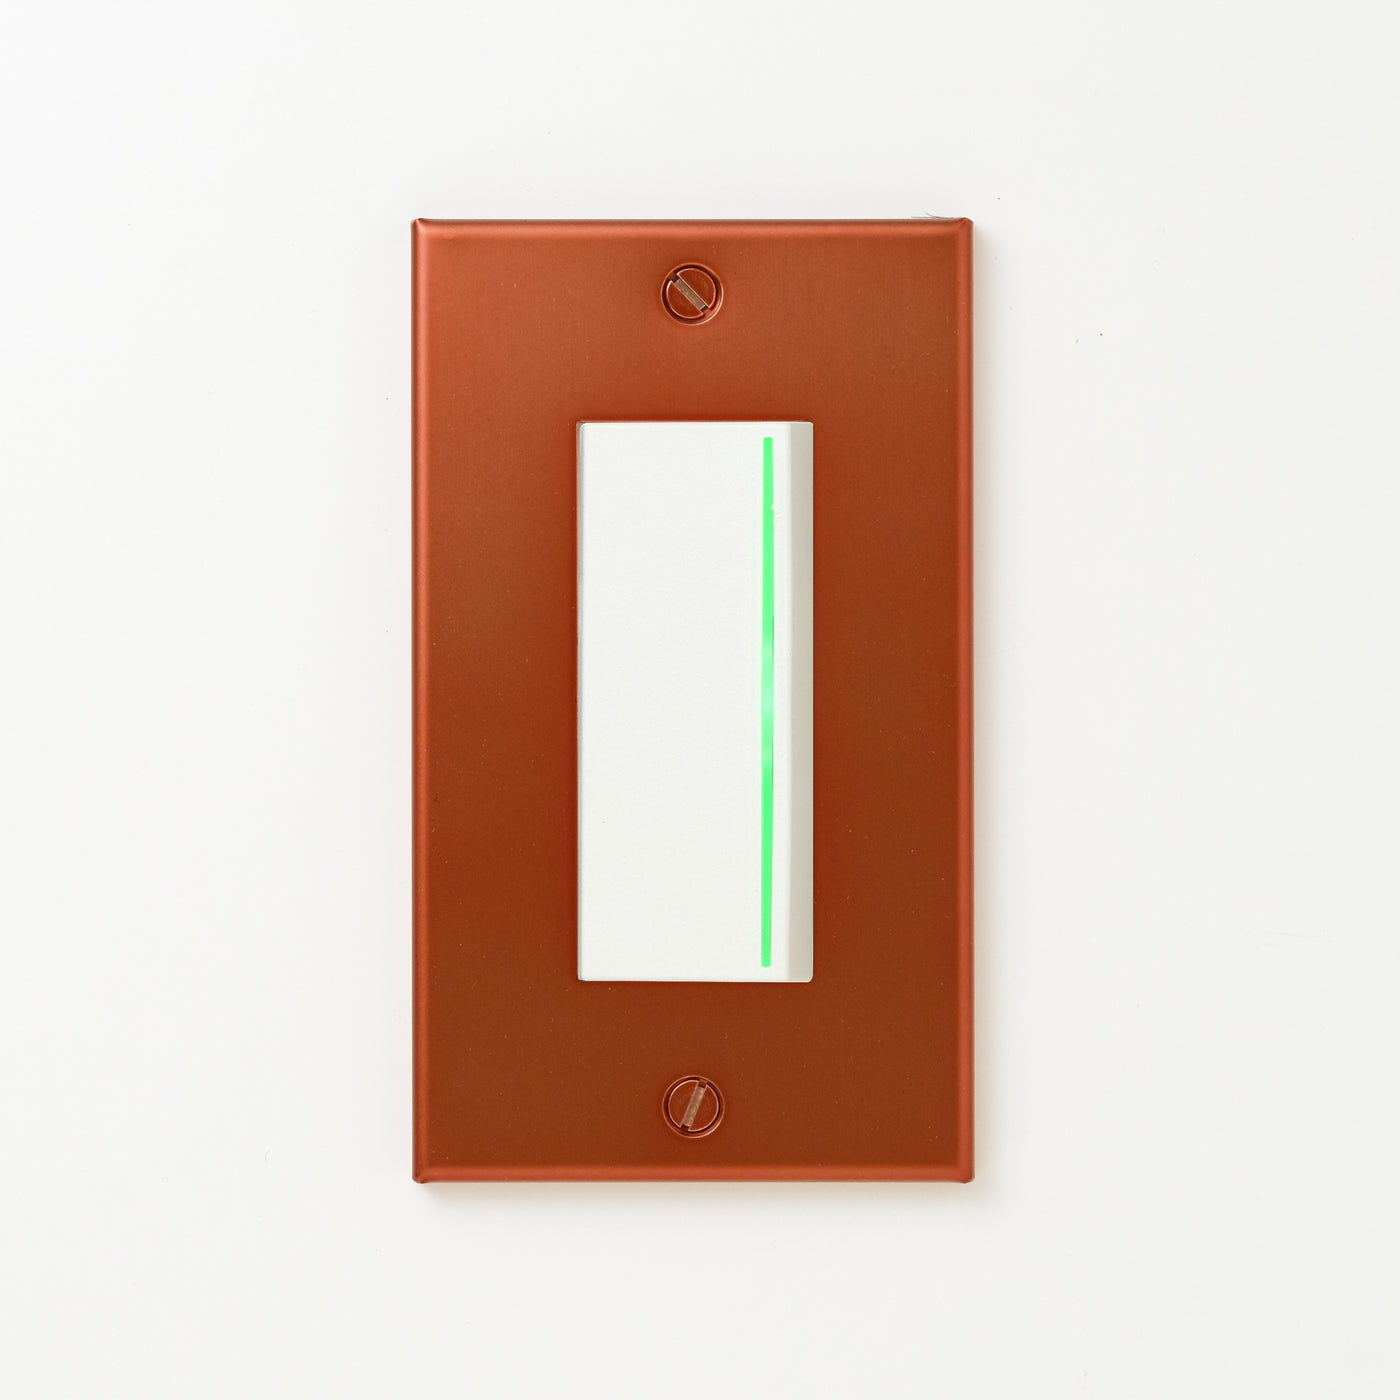 銅色（光沢） プレート <br>+ NK 片切、3路ガイドランプ（グリーン）付スイッチシングル  ホワイト